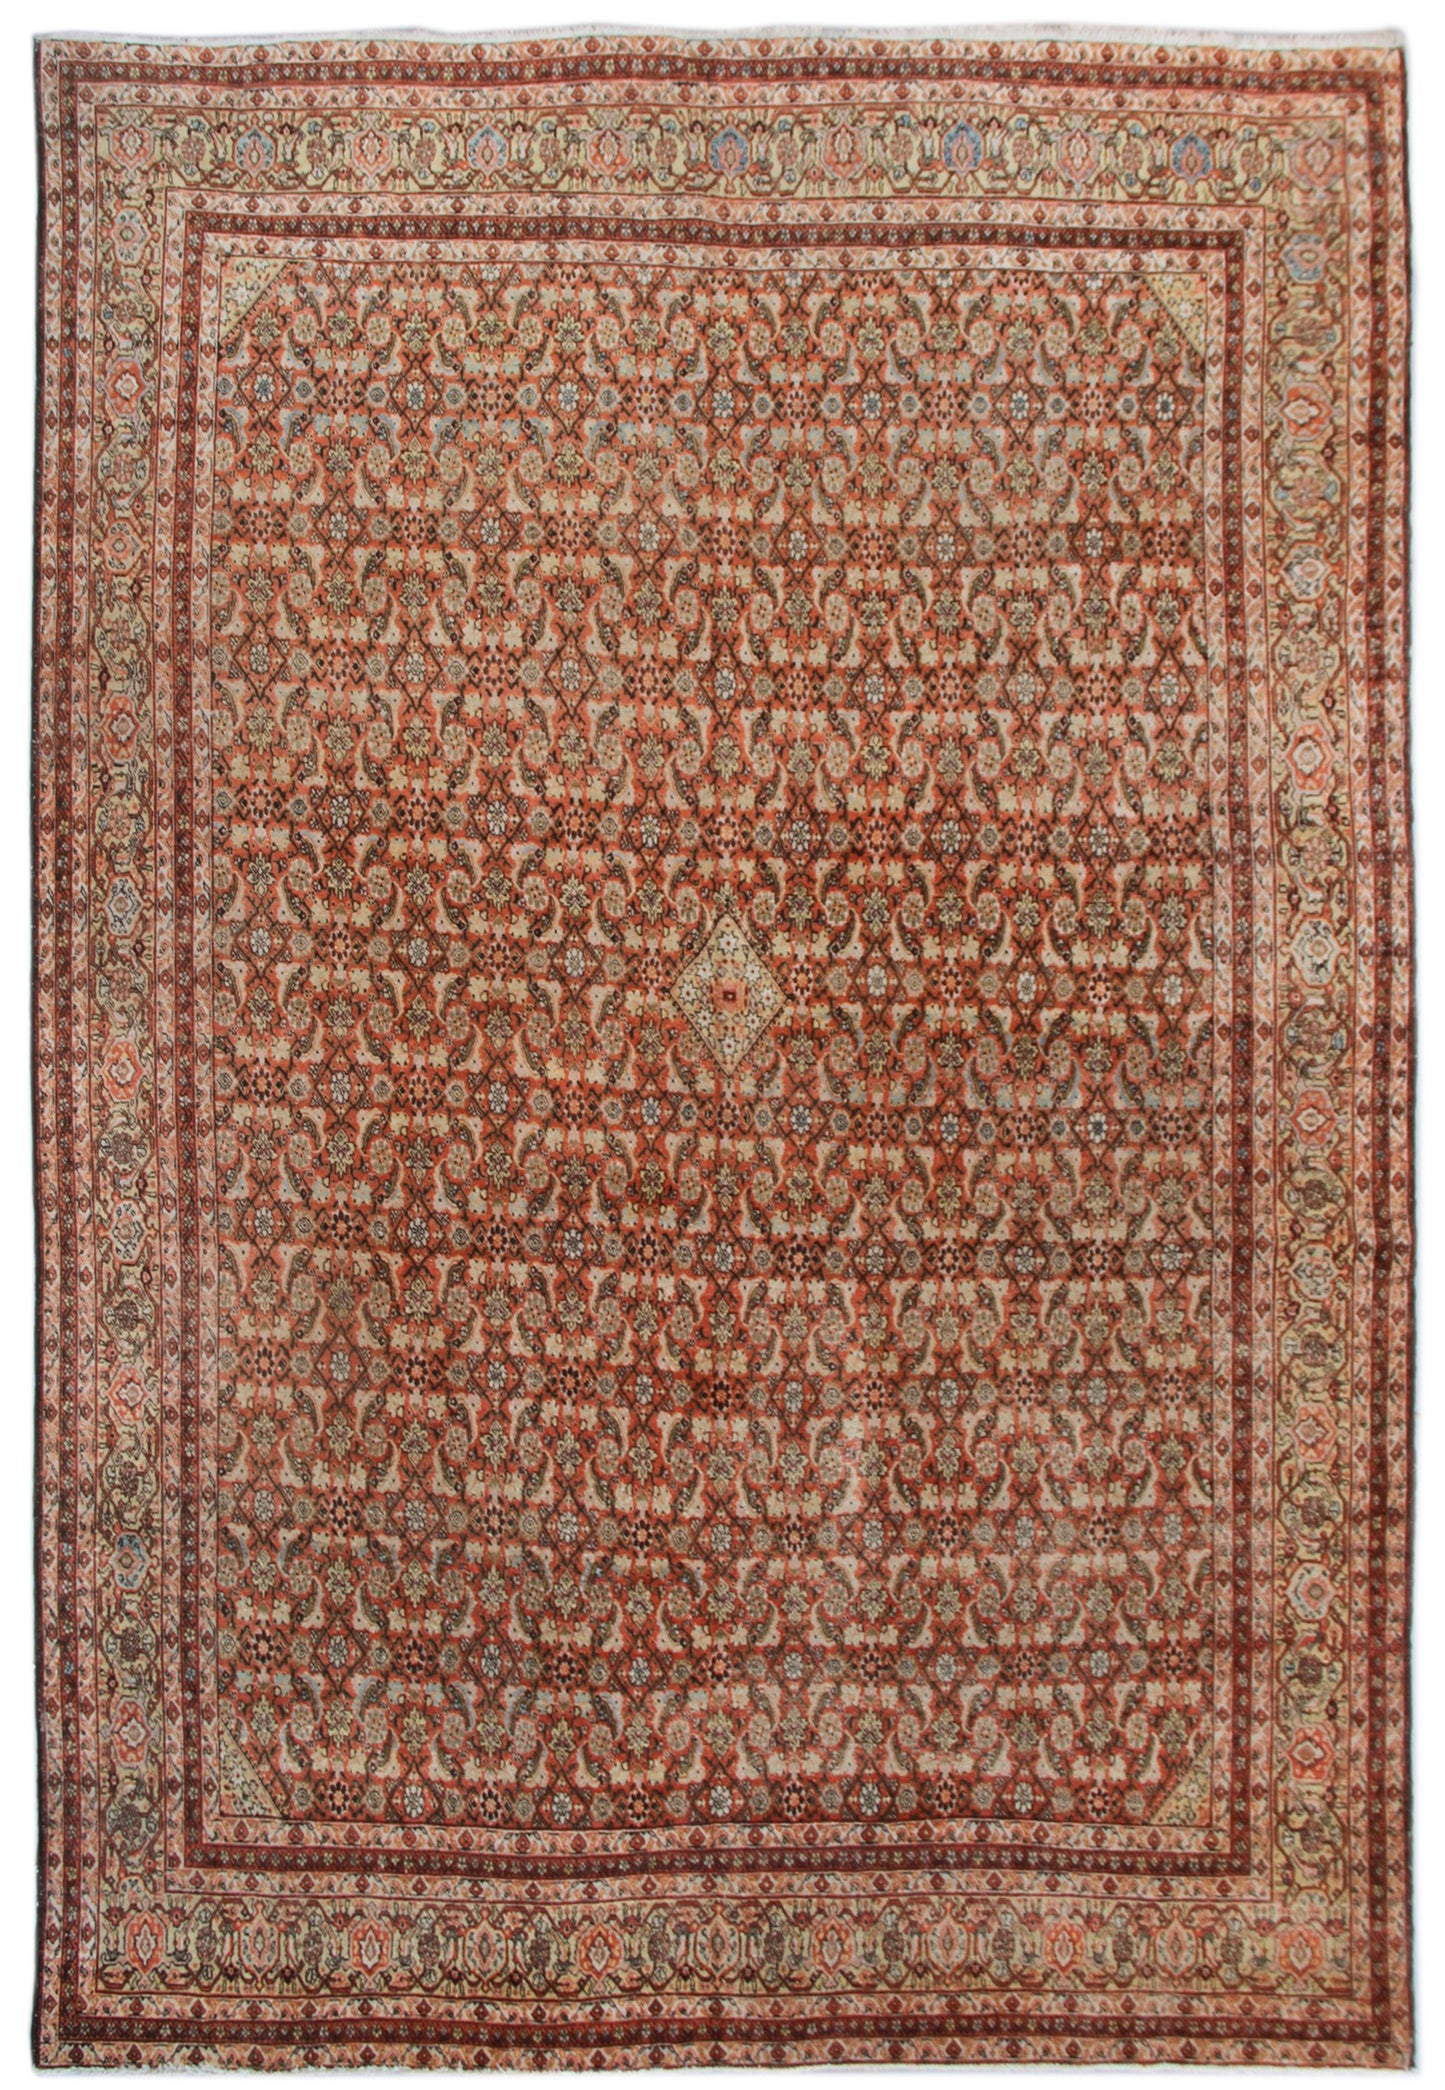 10'x12' Orange Rust Geometric Vintage Tabriz Rug